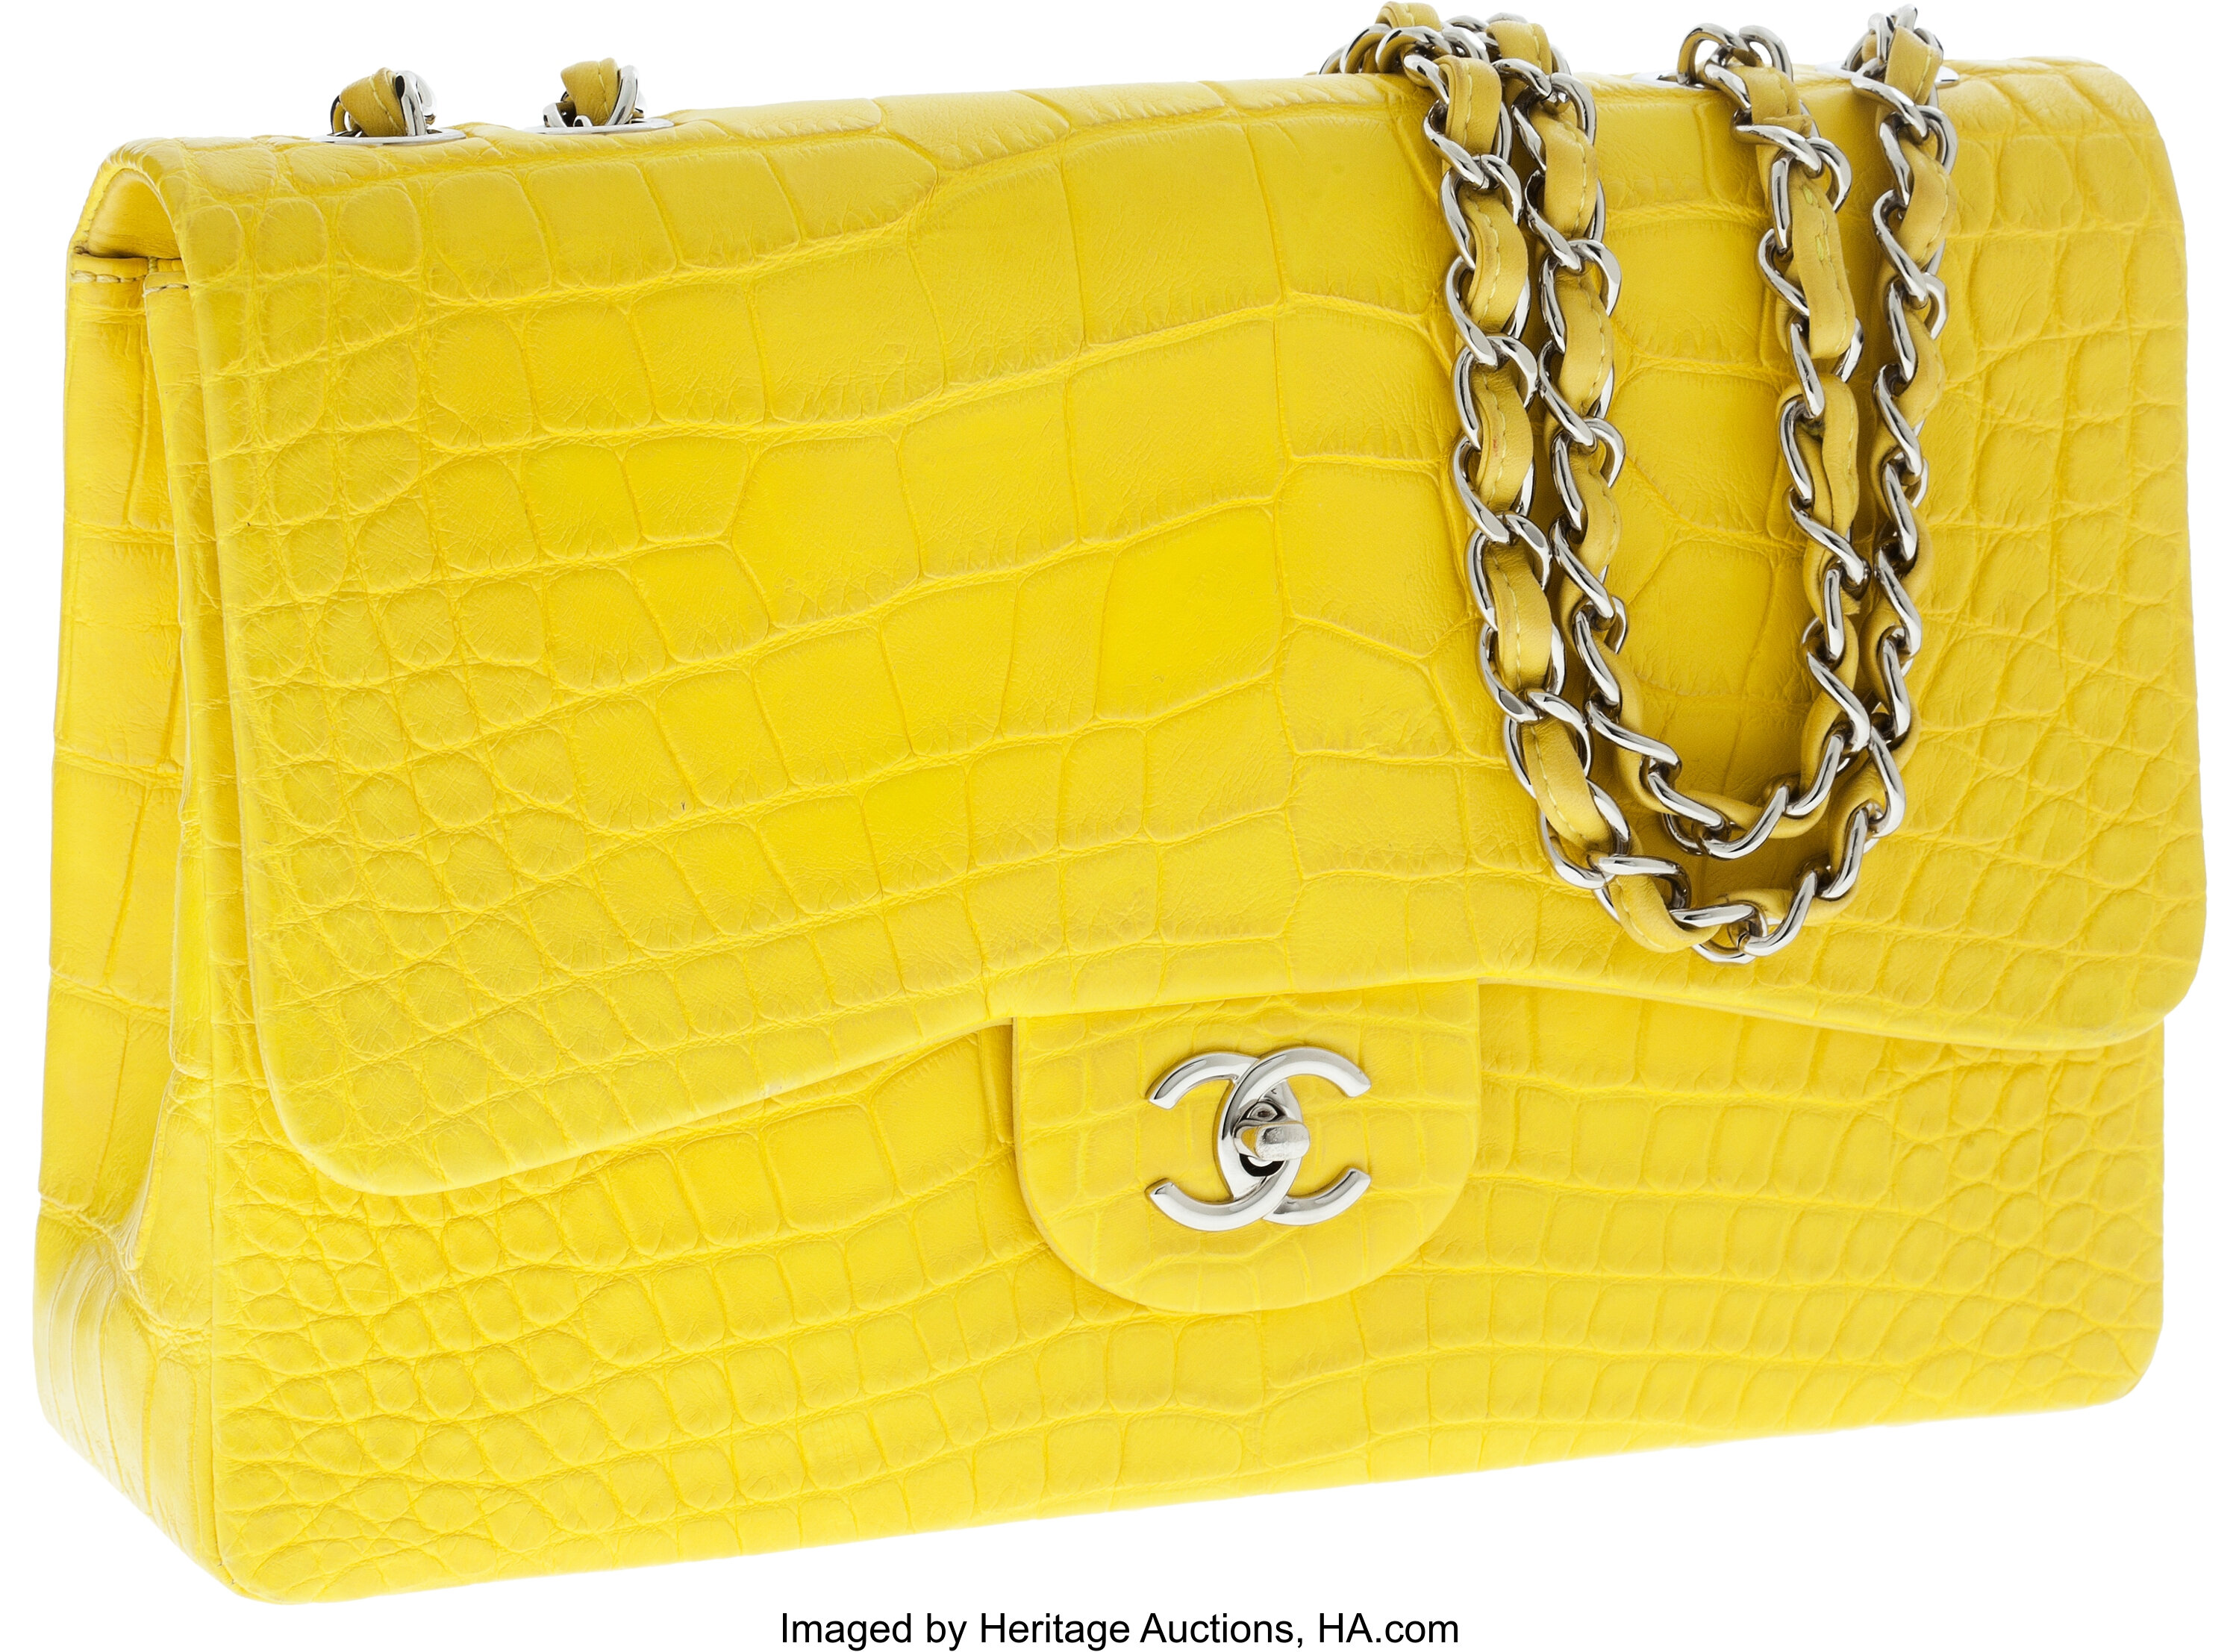 Chanel Matte Jaune Yellow Crocodile Jumbo Single Flap Bag with